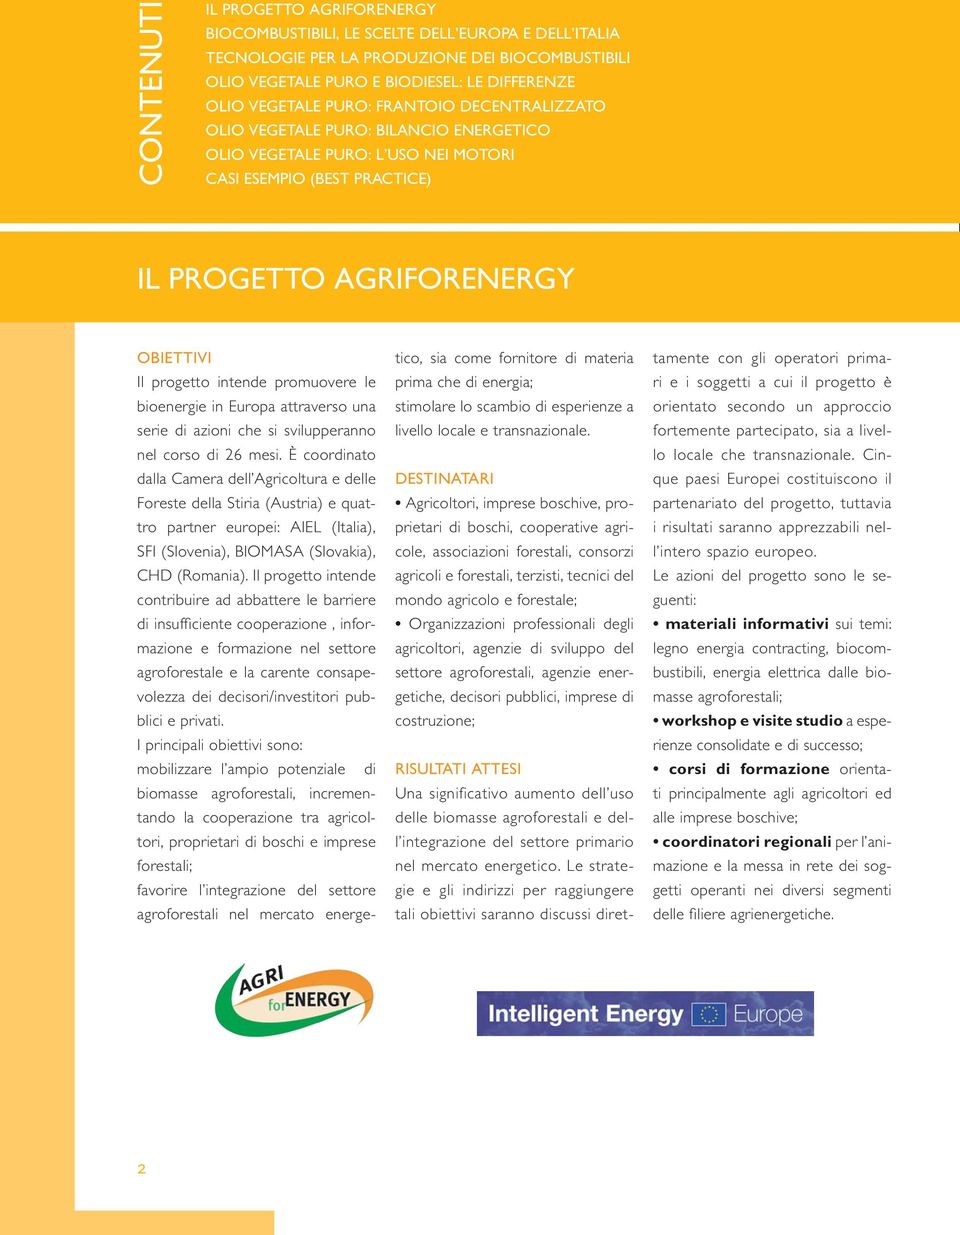 promuovere le bioenergie in Europa attraverso una serie di azioni che si svilupperanno nel corso di 26 mesi.